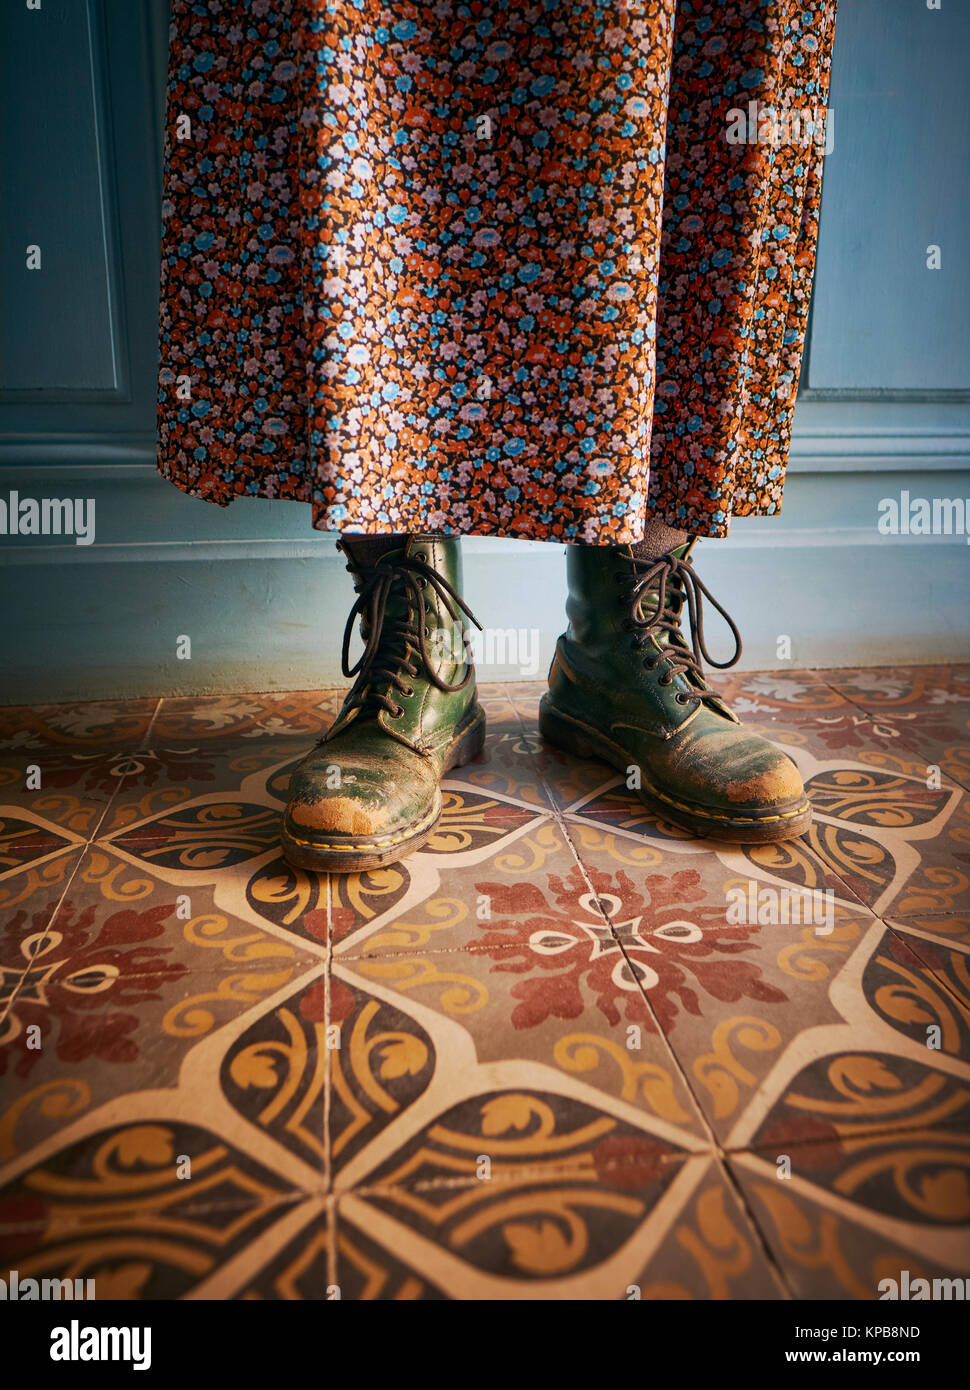 Tragen getragen grünen Dr. Martens Stiefel / Schuhe mit einem Rock in einem rustikalen Stil französisch Haus Interieur - Arbeit Stiefel - ungerade - schrulliger Stil Stockfoto